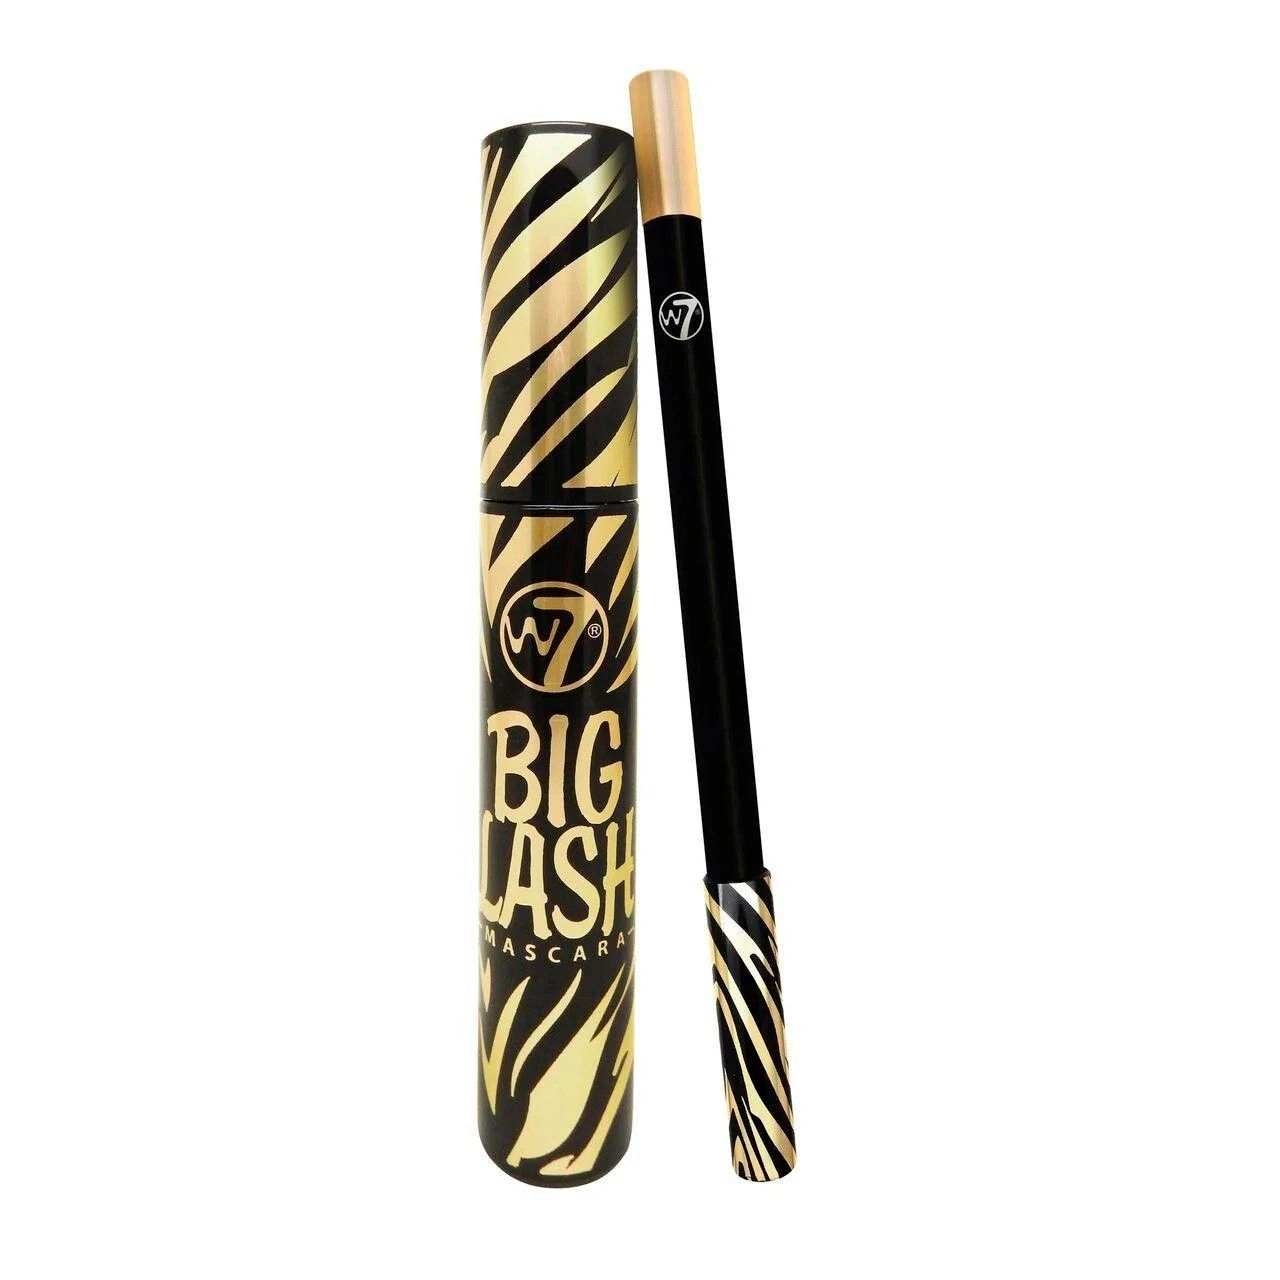 W7 Набір (туш для вій Big Lash Mascara Duo Blackest Black, 15 мл + олівець для очей Eyeliner Pencil, 1.2 г) - фото N1